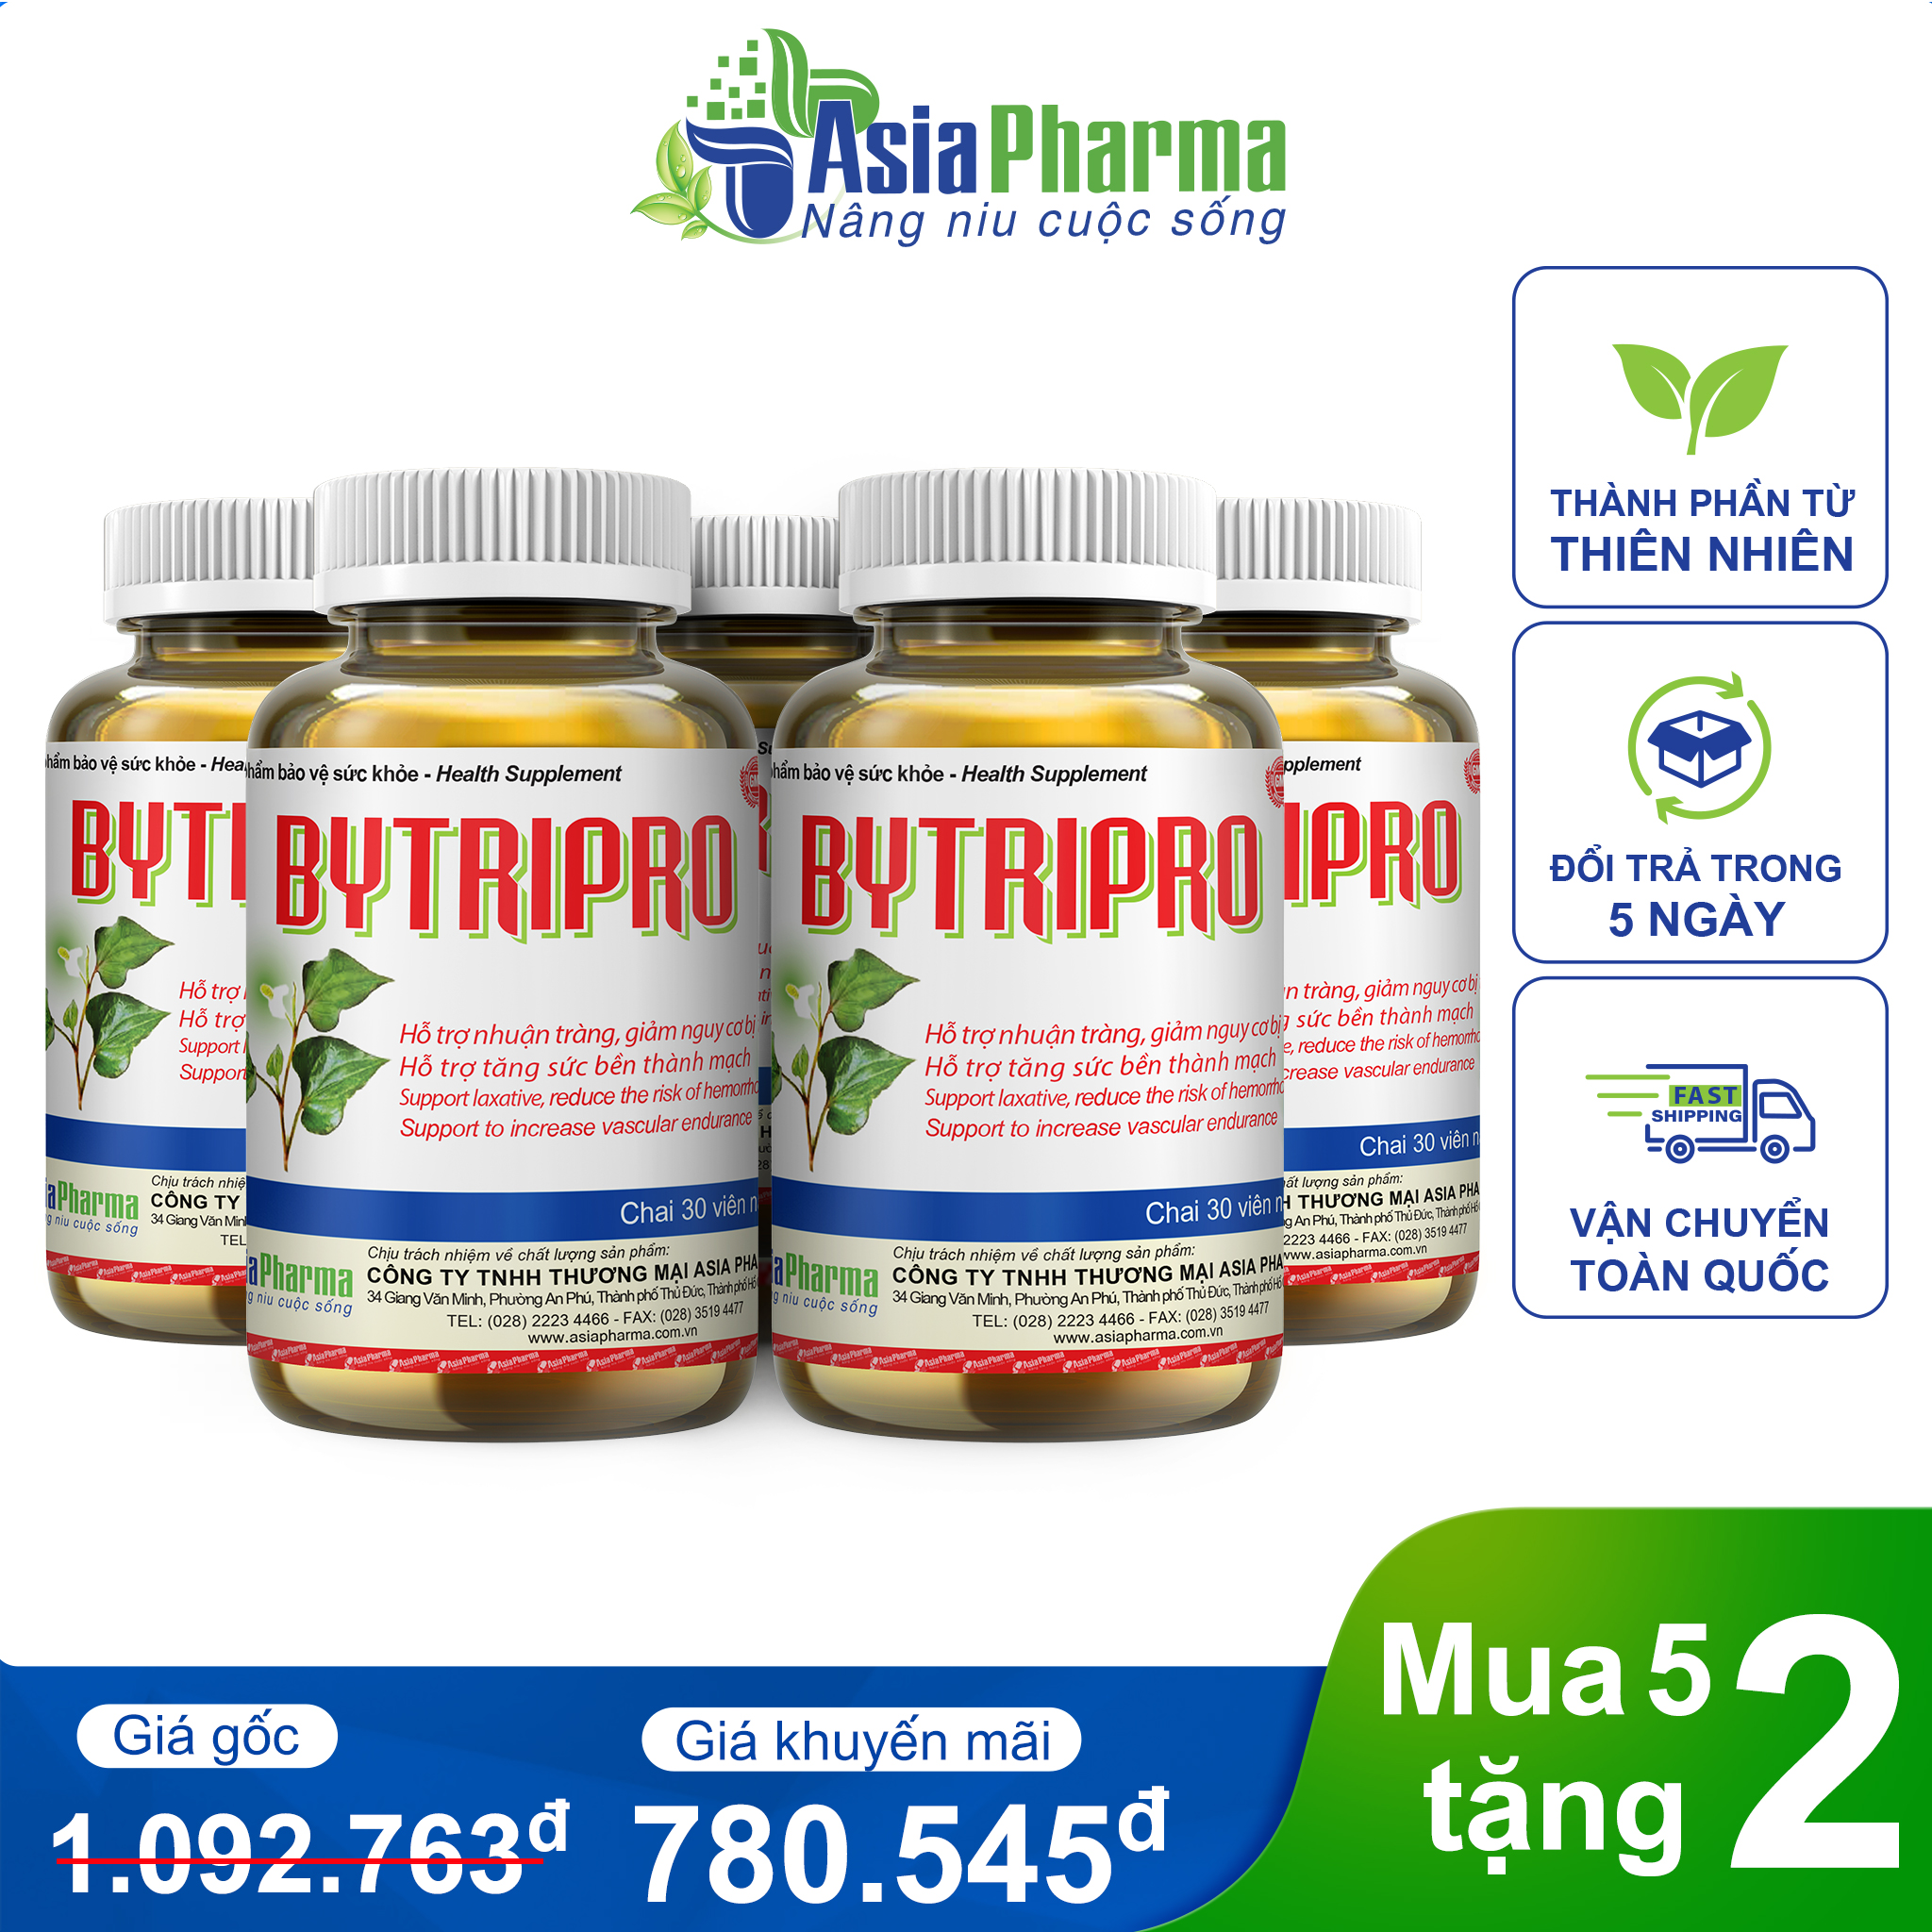 Mua 5 tặng 2 – Viên uống tiêu trĩ Bytripro Asia Pharma hỗ trợ nhuận tràng, giảm táo bón – Hộp 30 viên